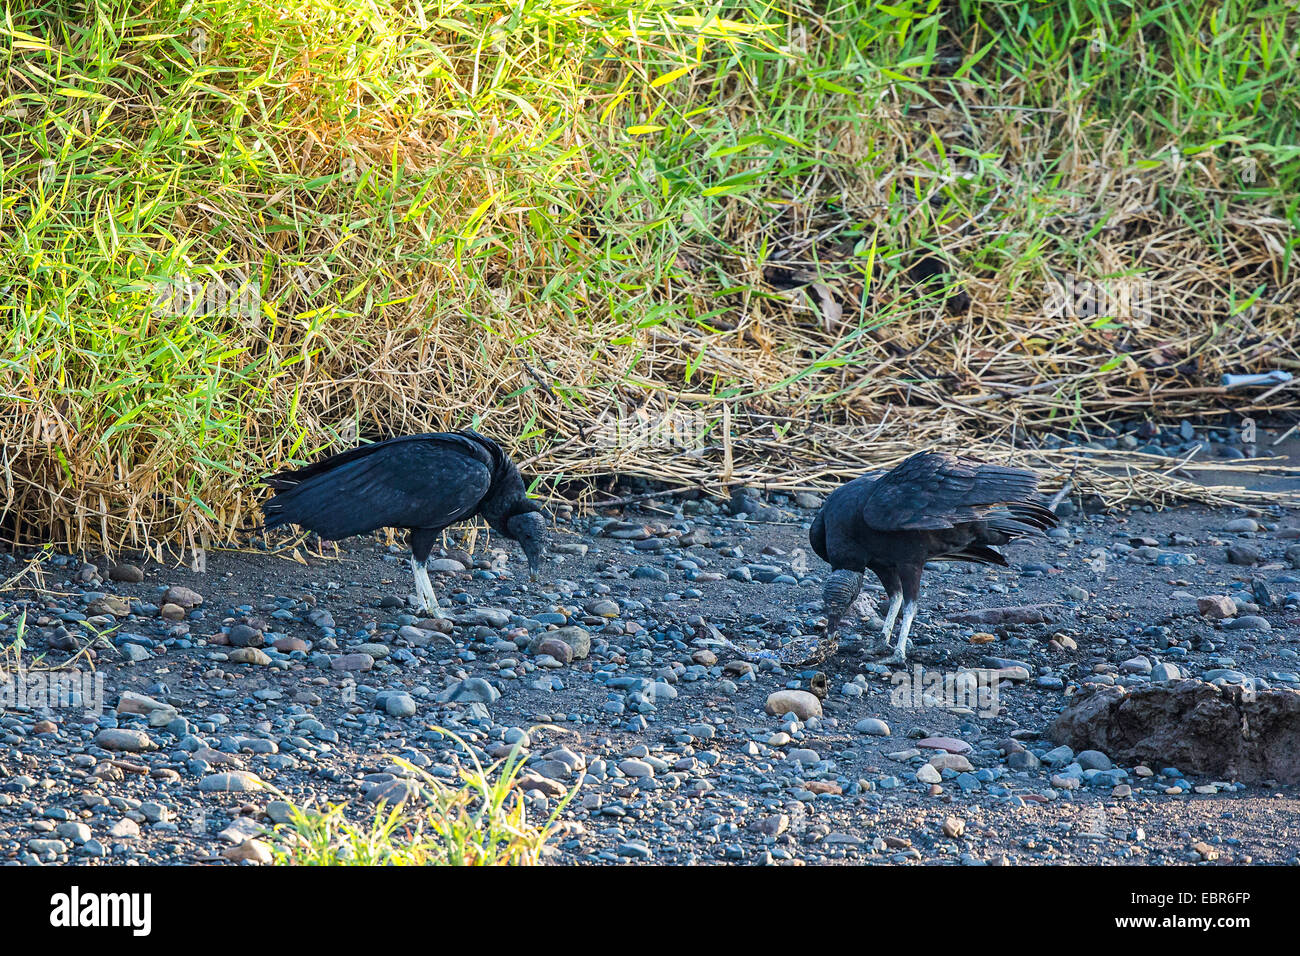 Urubu noir américain (Coragyps atratus), manger le fishesat river bank, le Costa Rica, Rio Herradura Banque D'Images